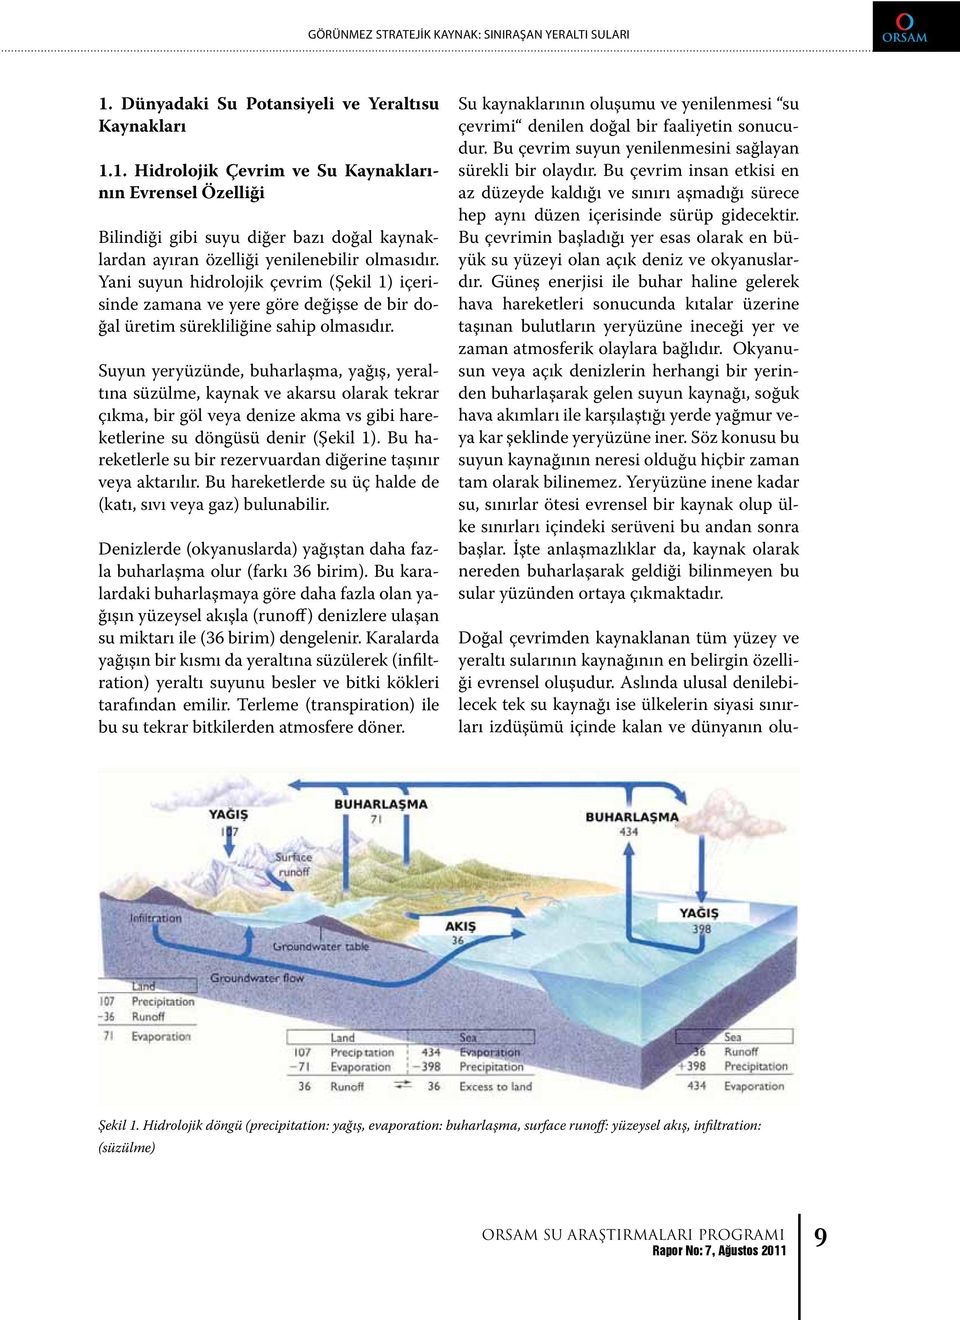 Bu baz çevrim bölgelerdeki suyun yenilenmesini sorunlar n oluşmas n sağlayan önleyecek 1.1. Hidrolojik çal şmalar Çevrim yapmak ve Su Kaynaklarının Evrensel düzenlemek Özelliği olarak aç klanm şt r.